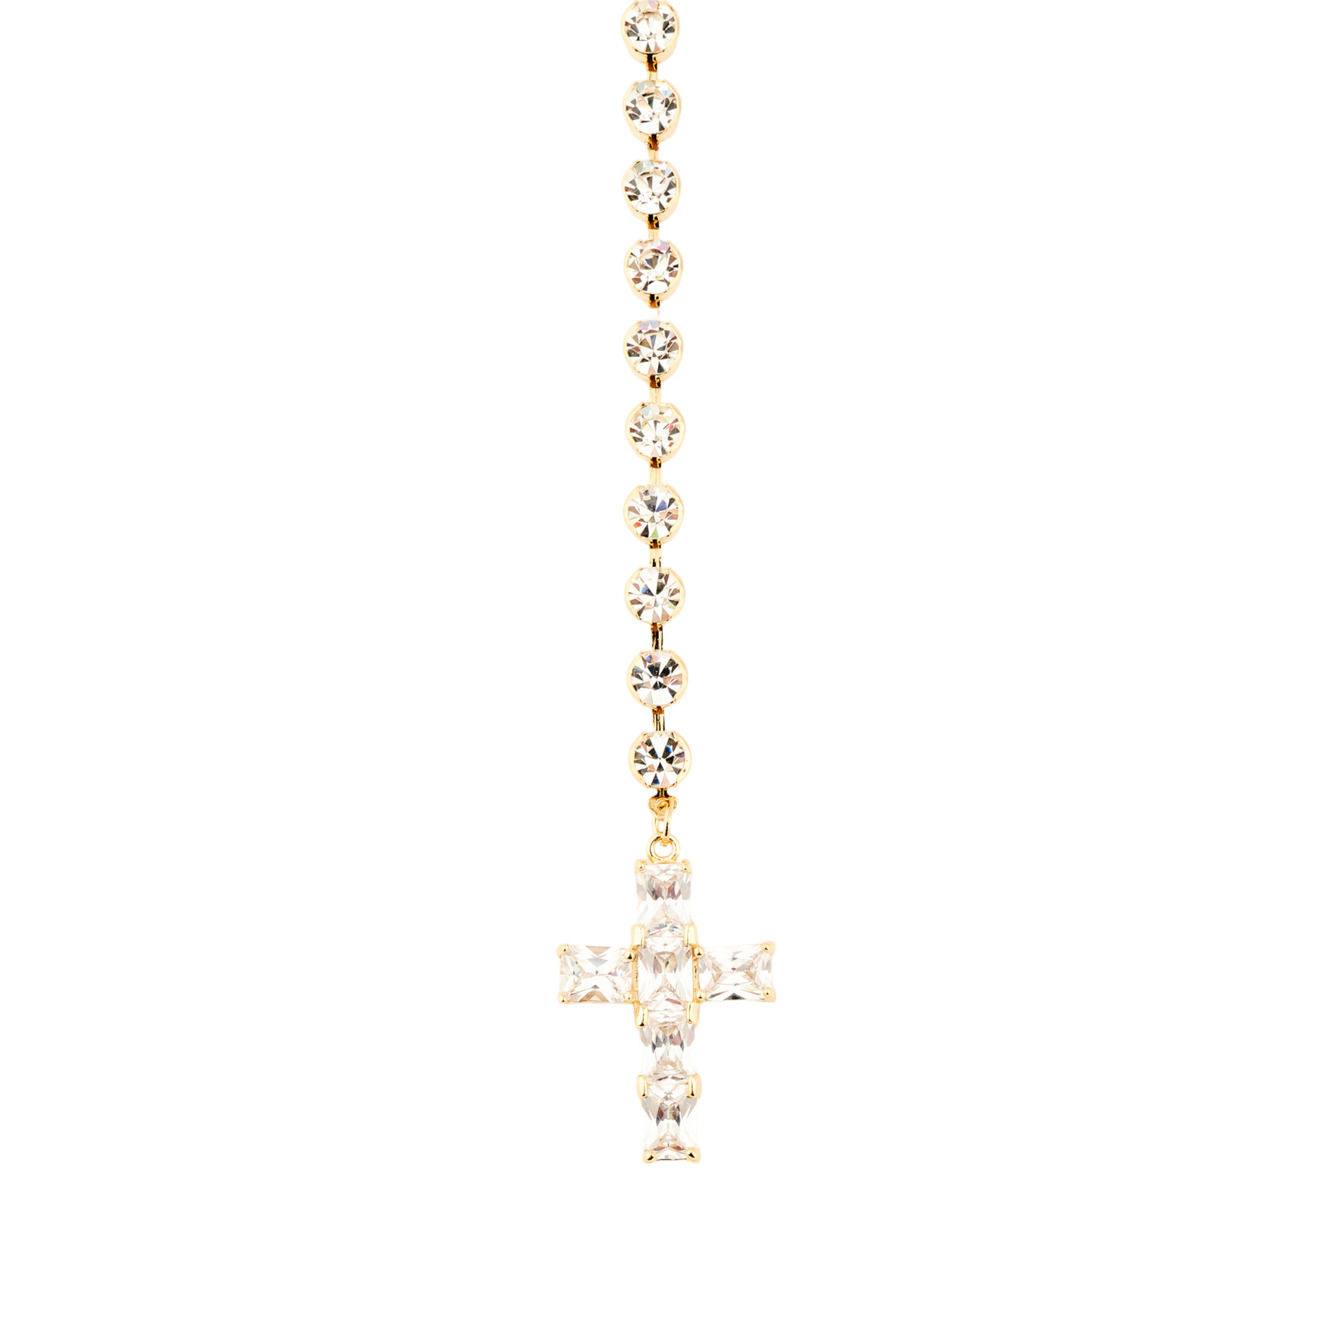 Herald Percy Золотистый сотуар с белыми кристаллами и подвеской крестом herald percy золотистый теннисный браслет с кристаллами